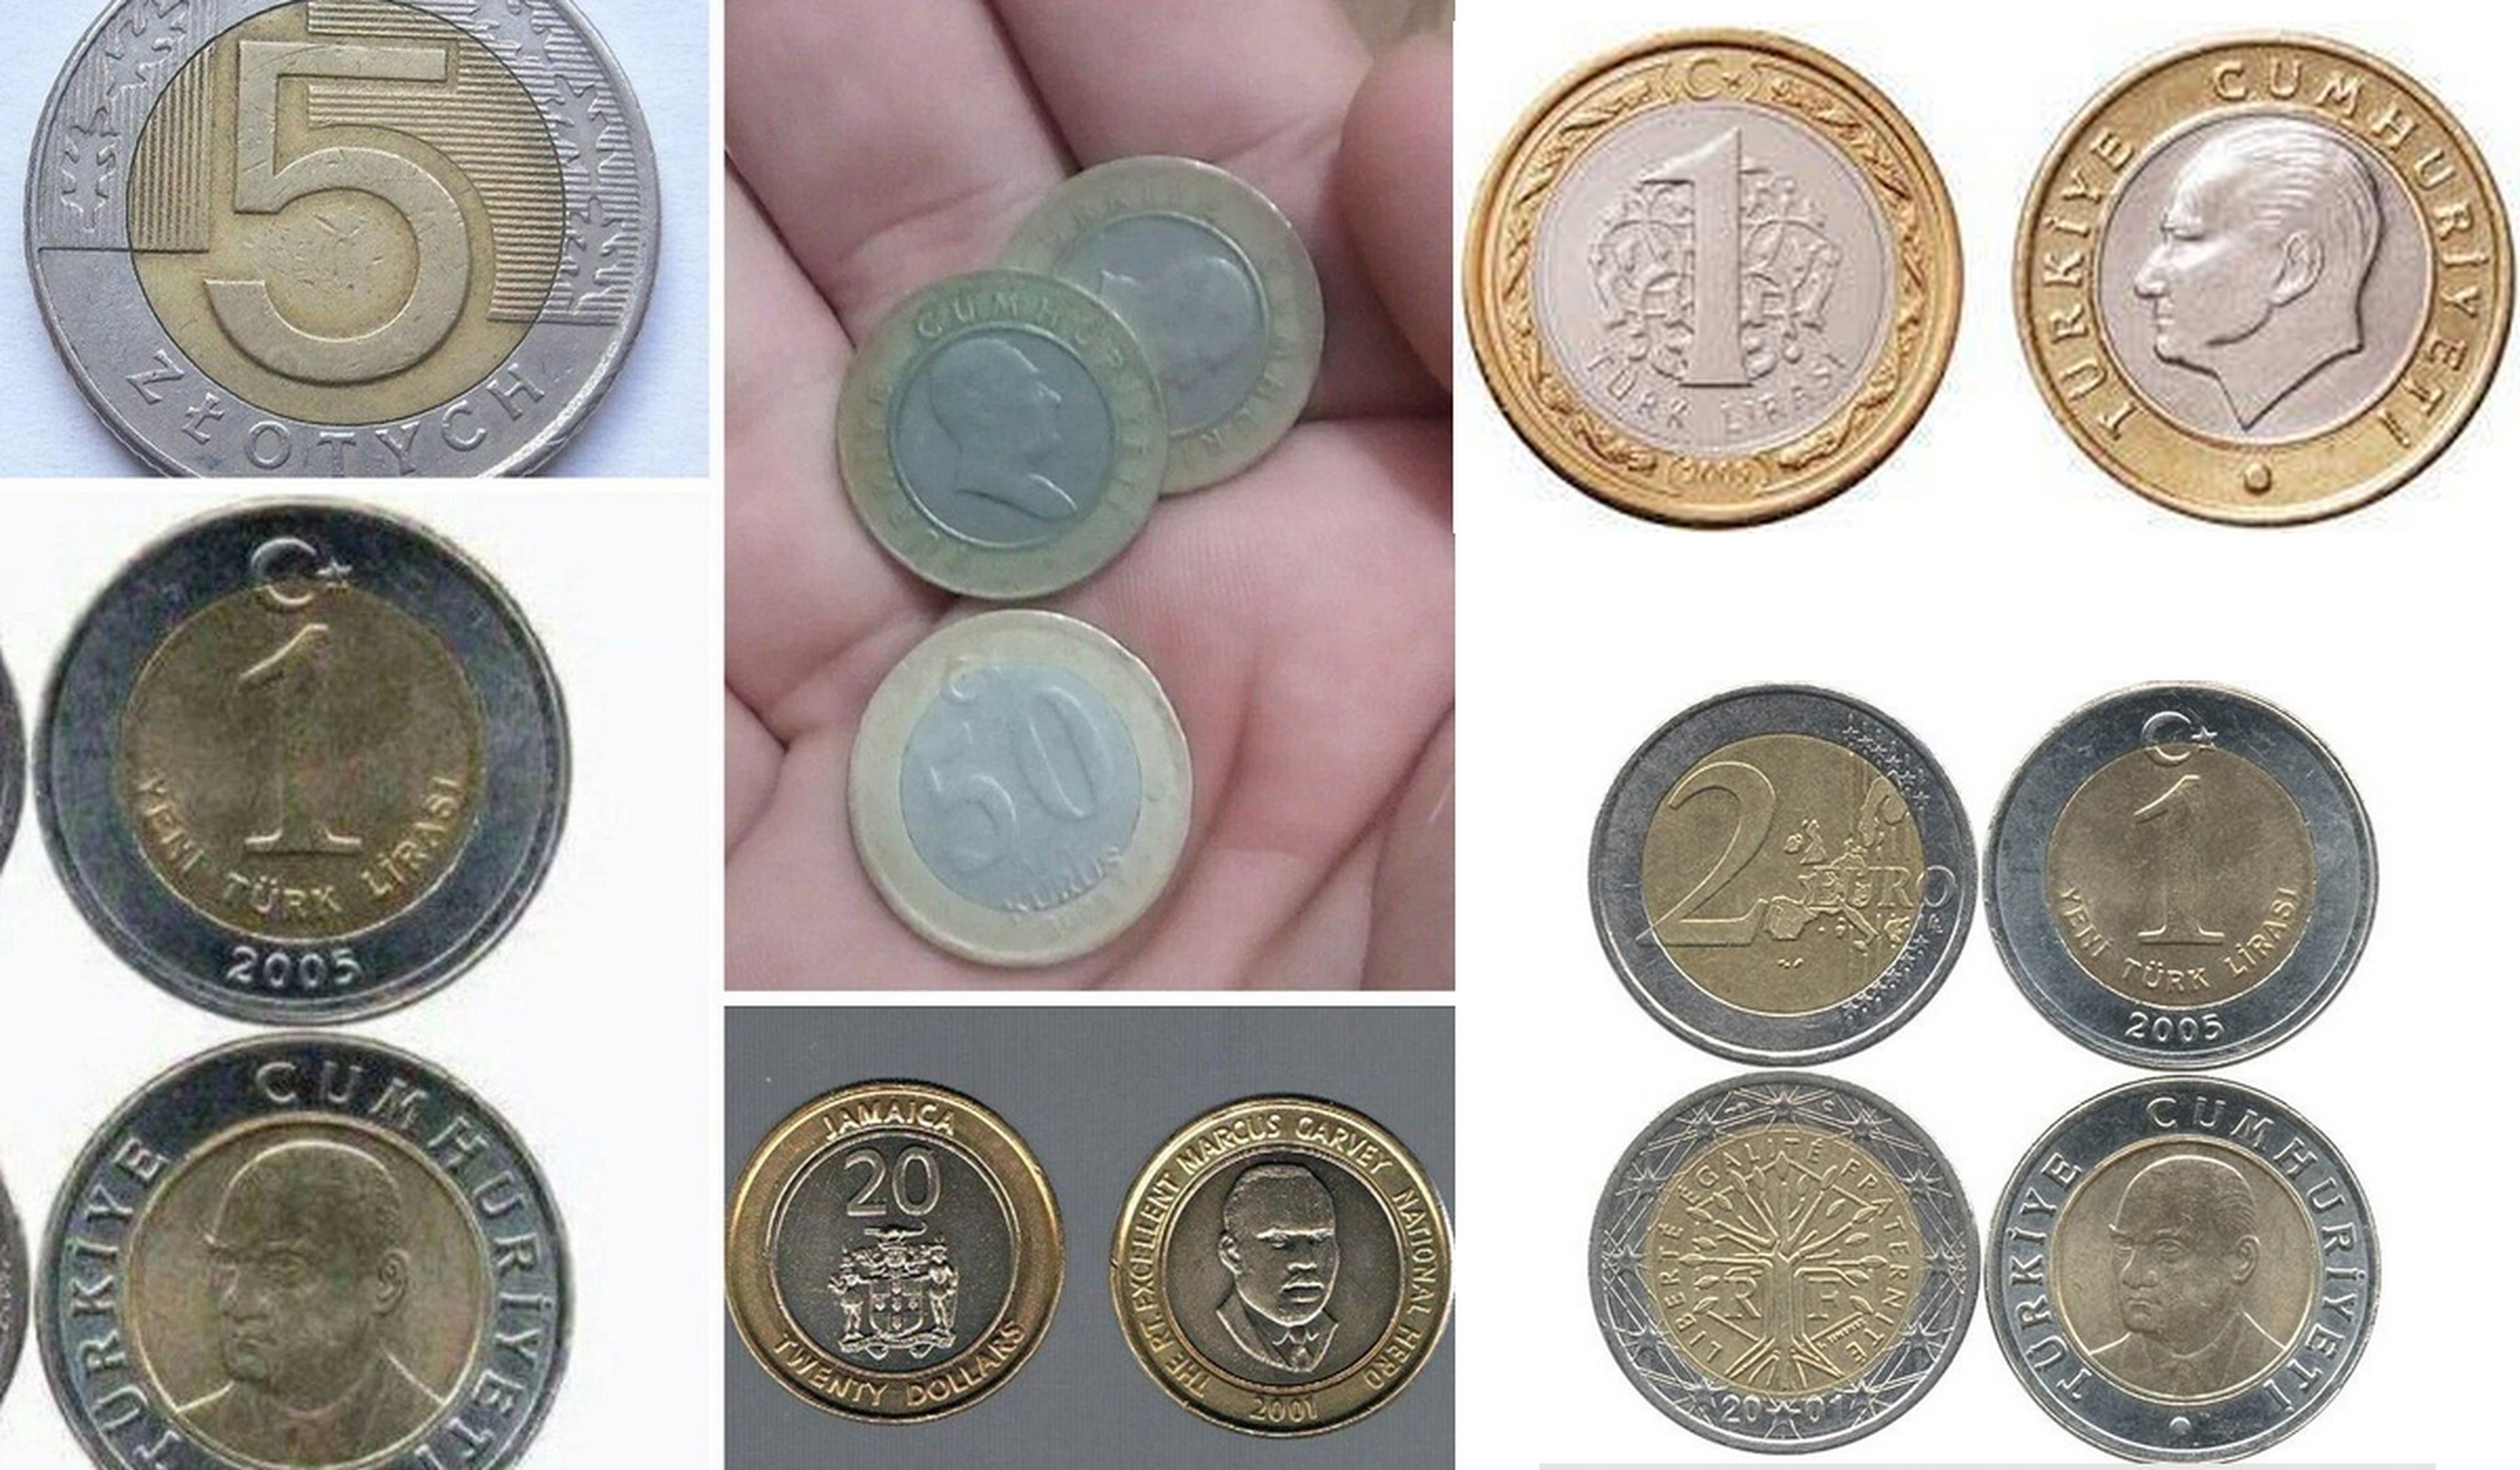 La estafa del cambio: estas monedas extranjeras nos las cuelan por euros